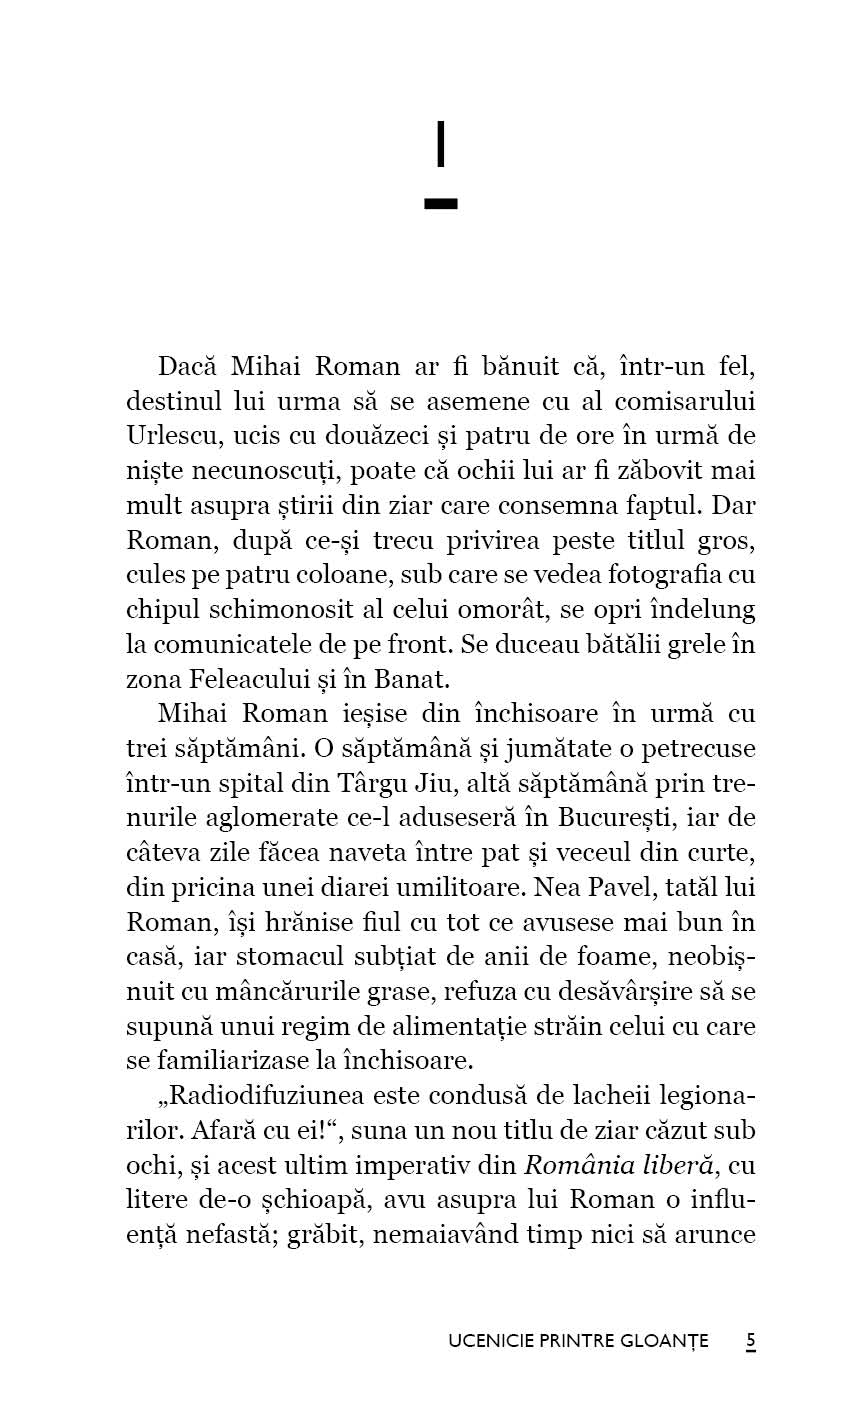 Ucenicie printre gloante - Ed. digitala - PDF - Publisol.ro